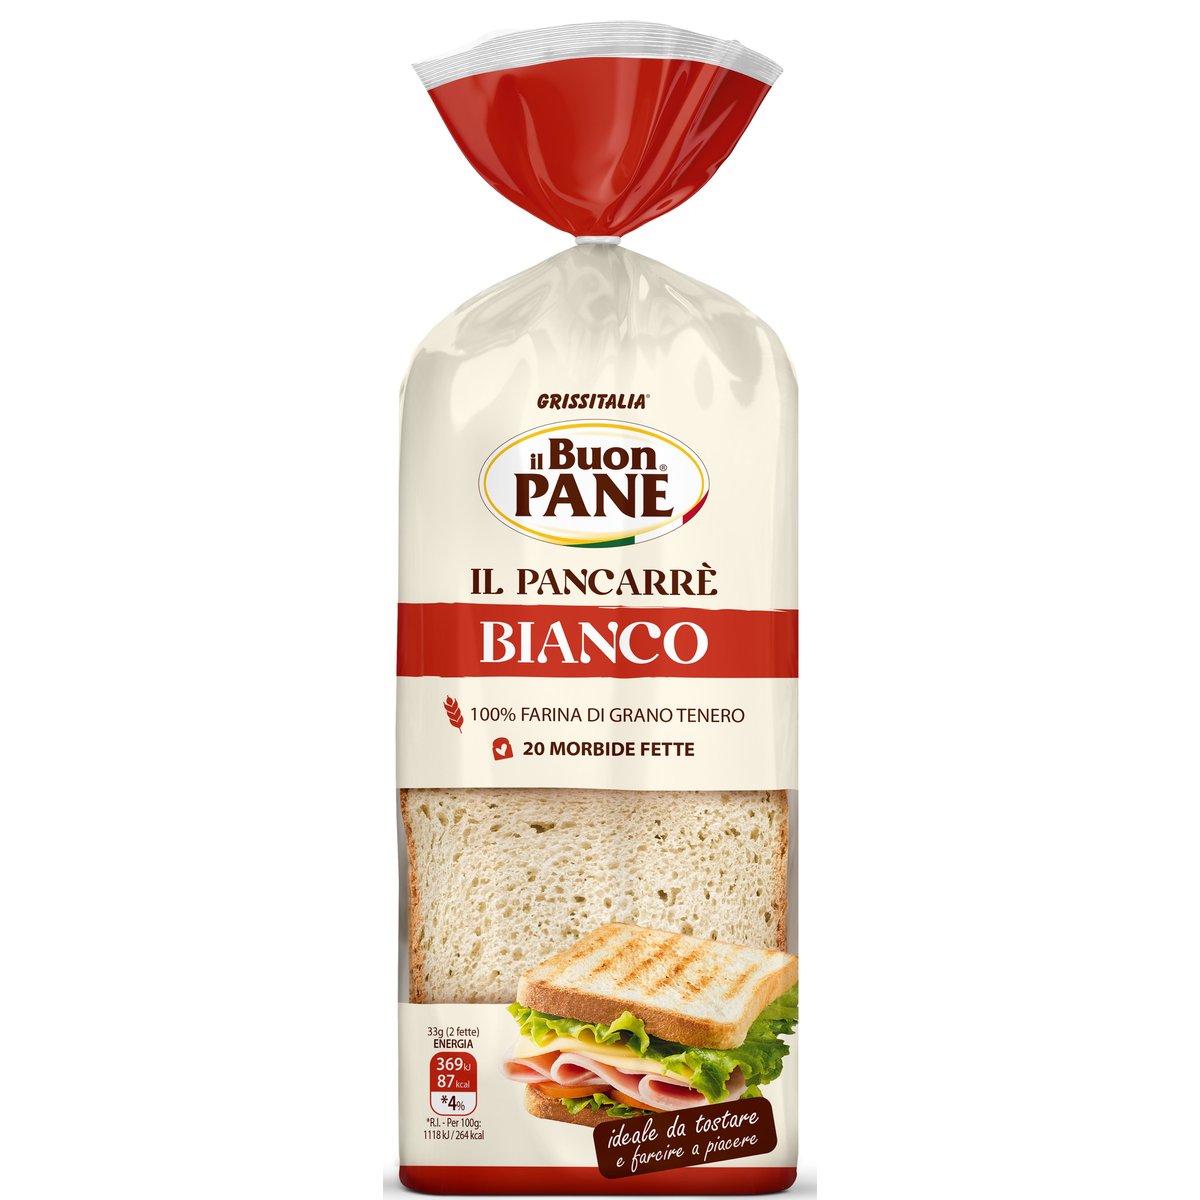 il Buon Pane Pancarre Toustový chléb světlý